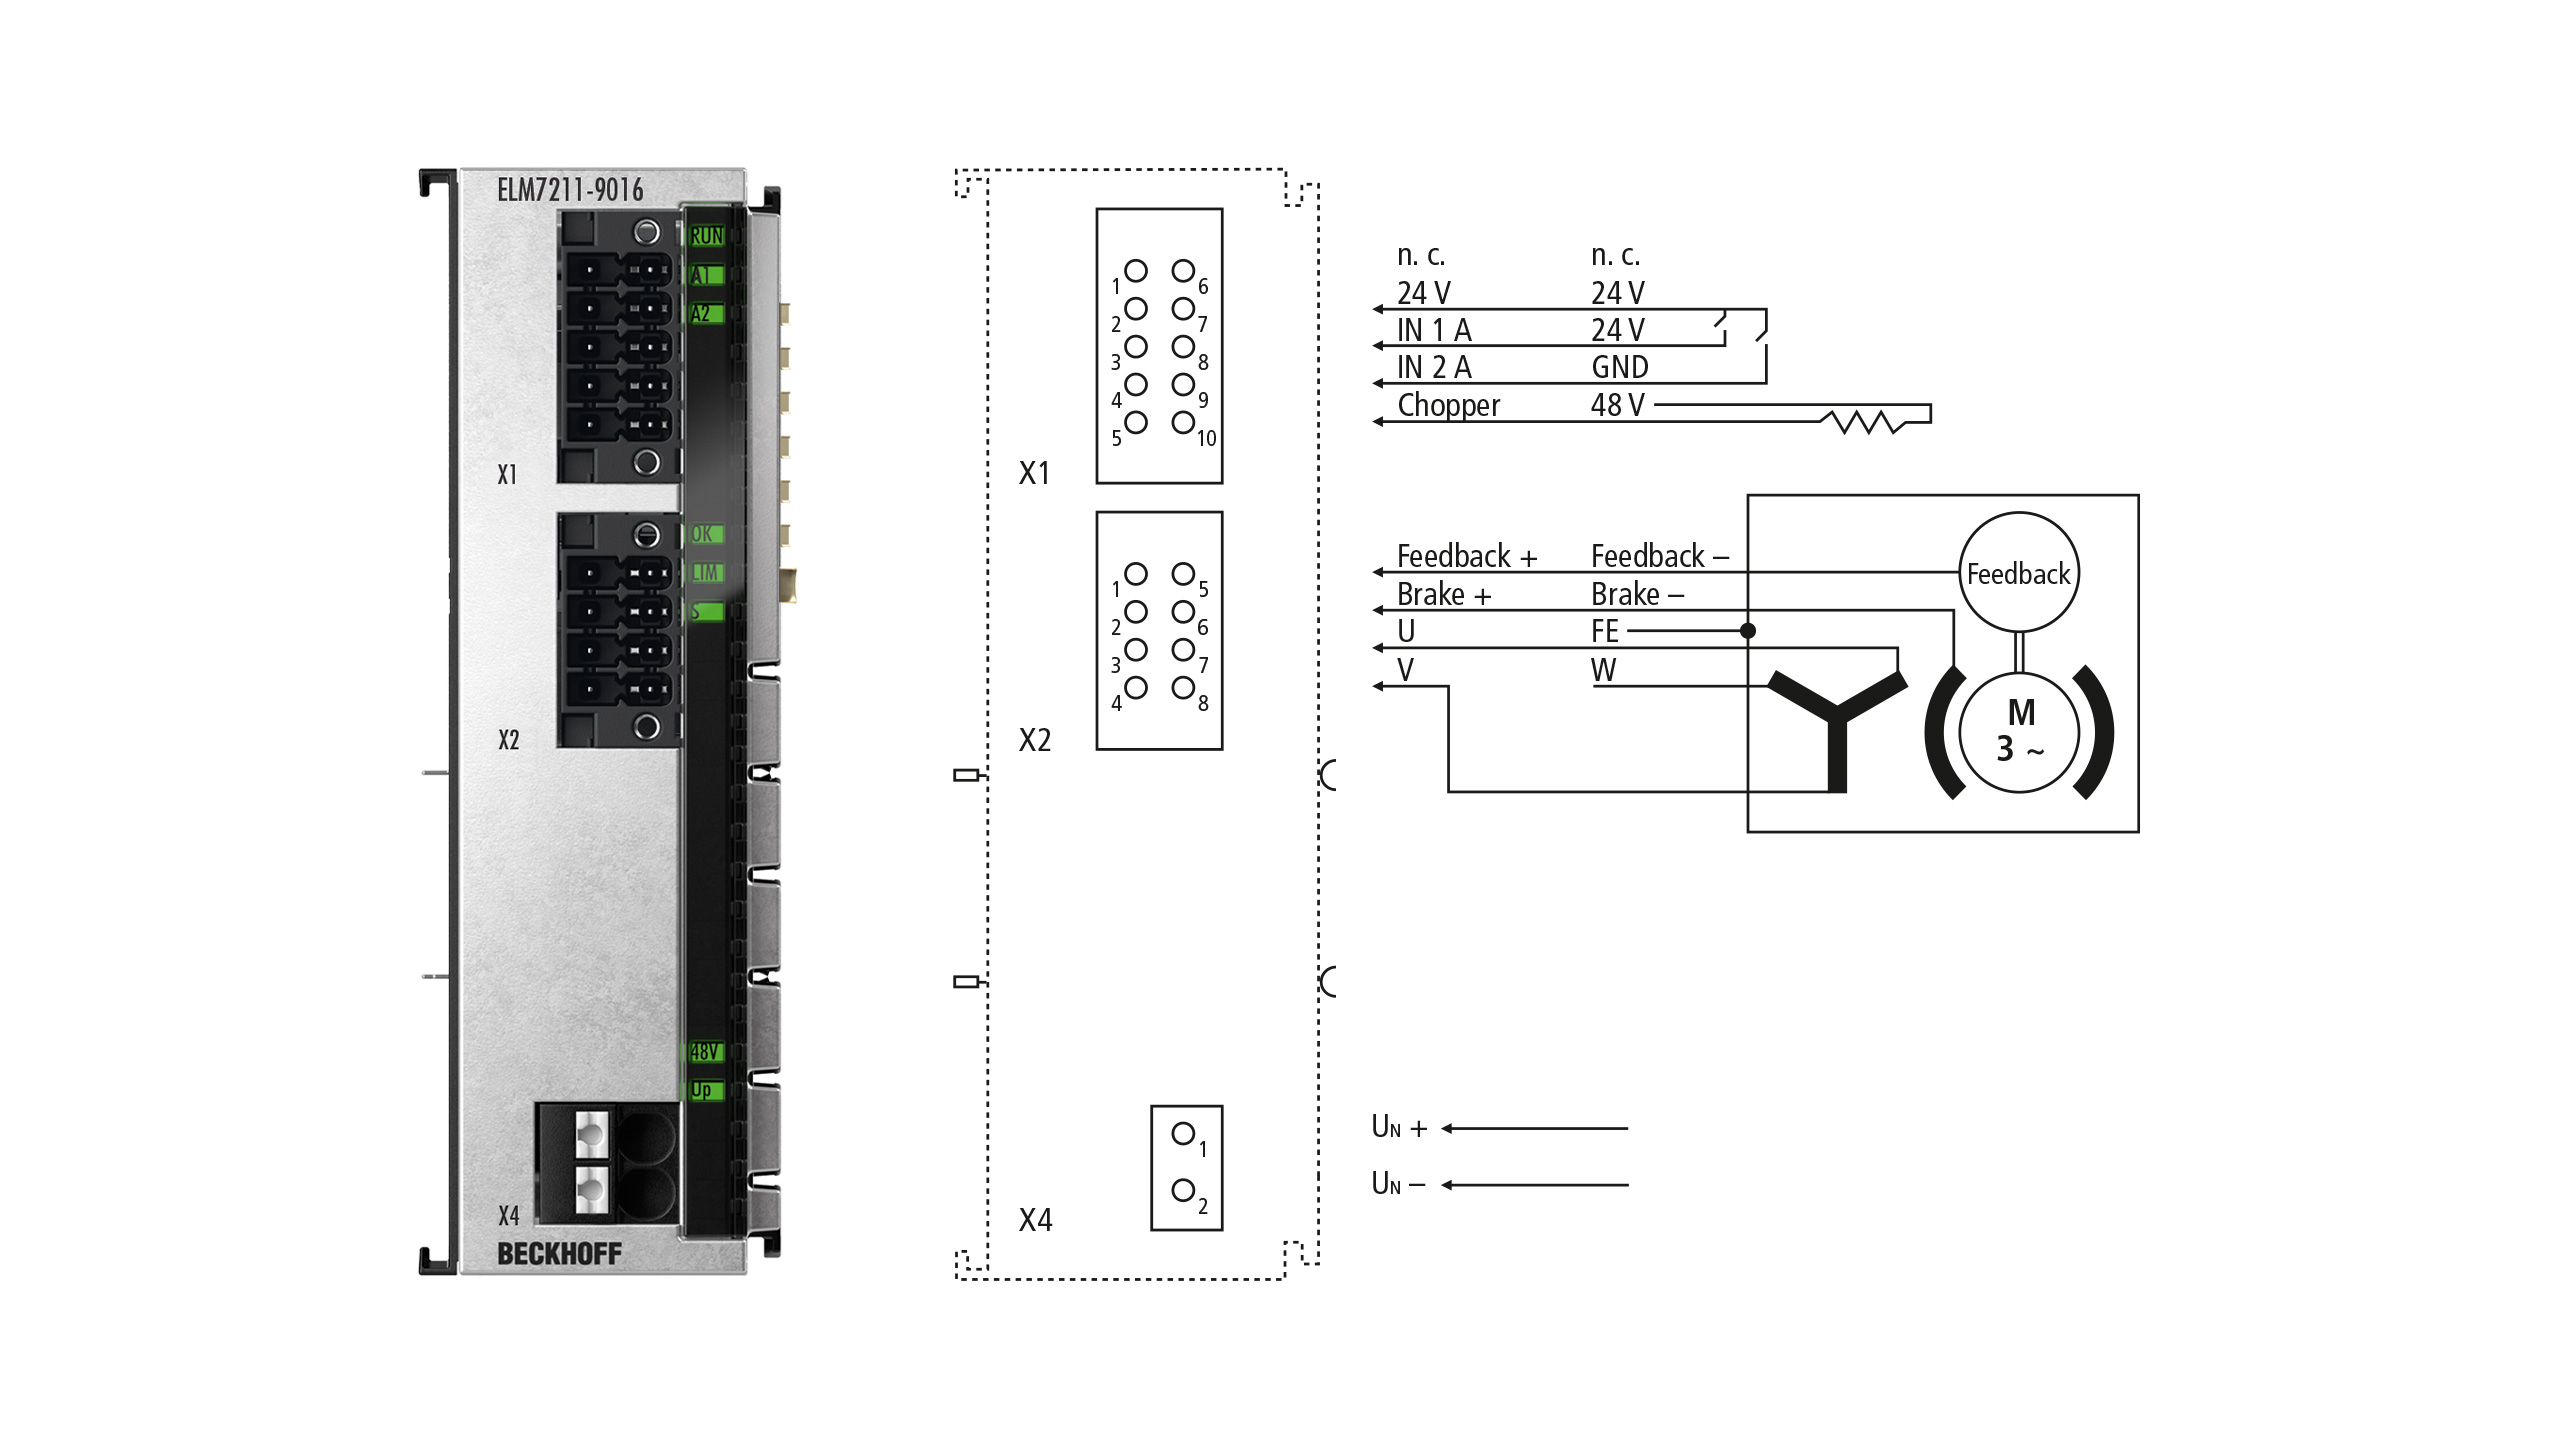 ELM7211-9016 | EtherCAT-Klemme, 1-Kanal-Motion-Interface, Servomotor, 48 V DC, 4,5 A, OCT, STO, TwinSAFE Logic